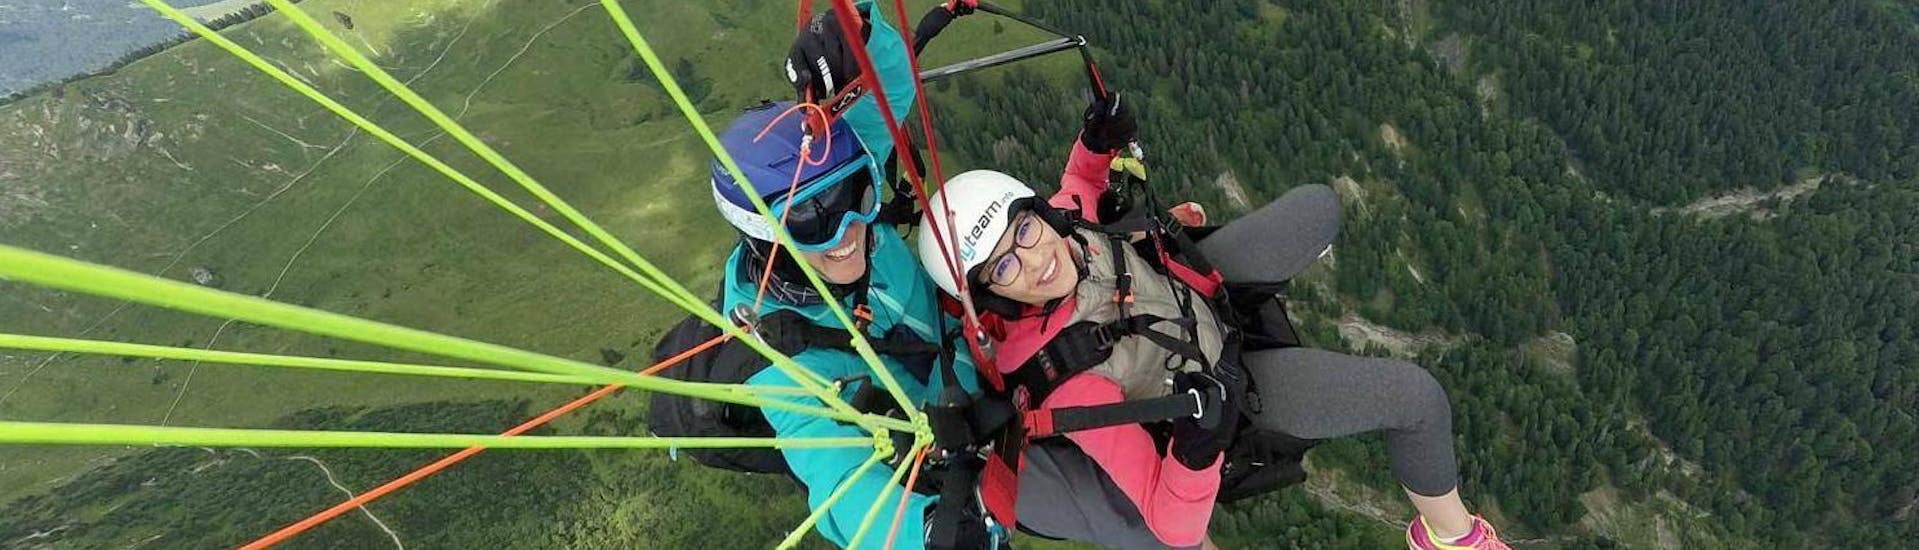 Ein Tandempilot von FlyTeam und seine Passagierin gleiten beim Tandem Paragliding "Ganzer Flugtag" im Allgäu und in Tirol über die grüne Berglandschaft.